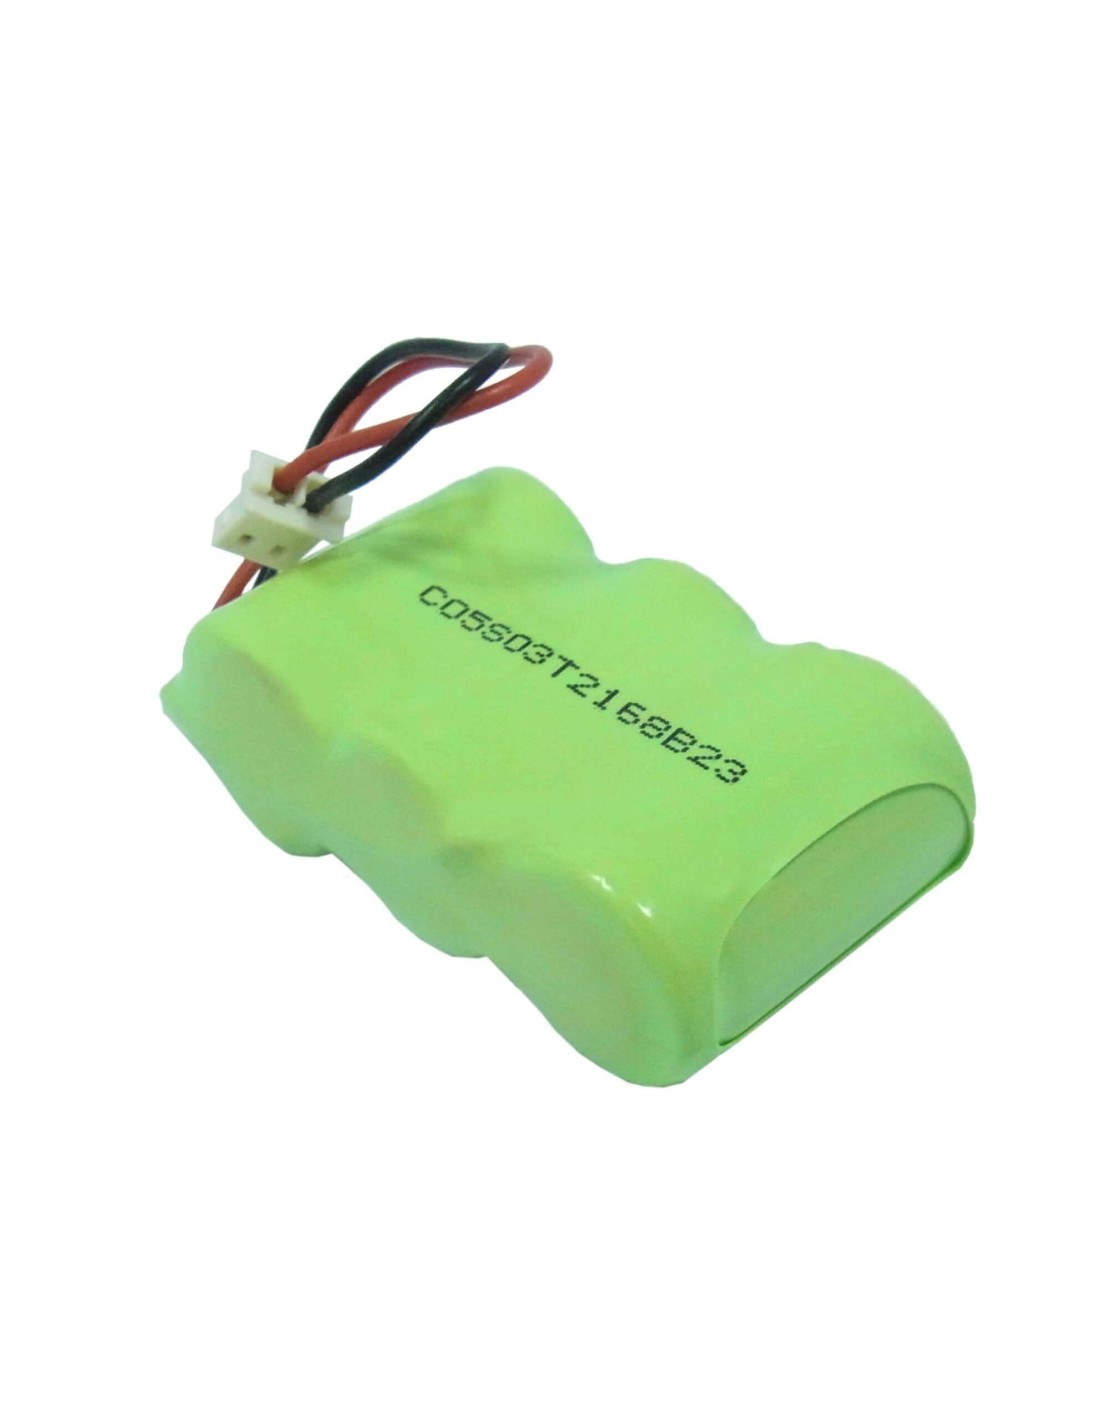 Battery for Chatter Box 100afh 2/3a, Cbfrs Batt, Hjc Frs 3.6V, 1000mAh - 3.60Wh